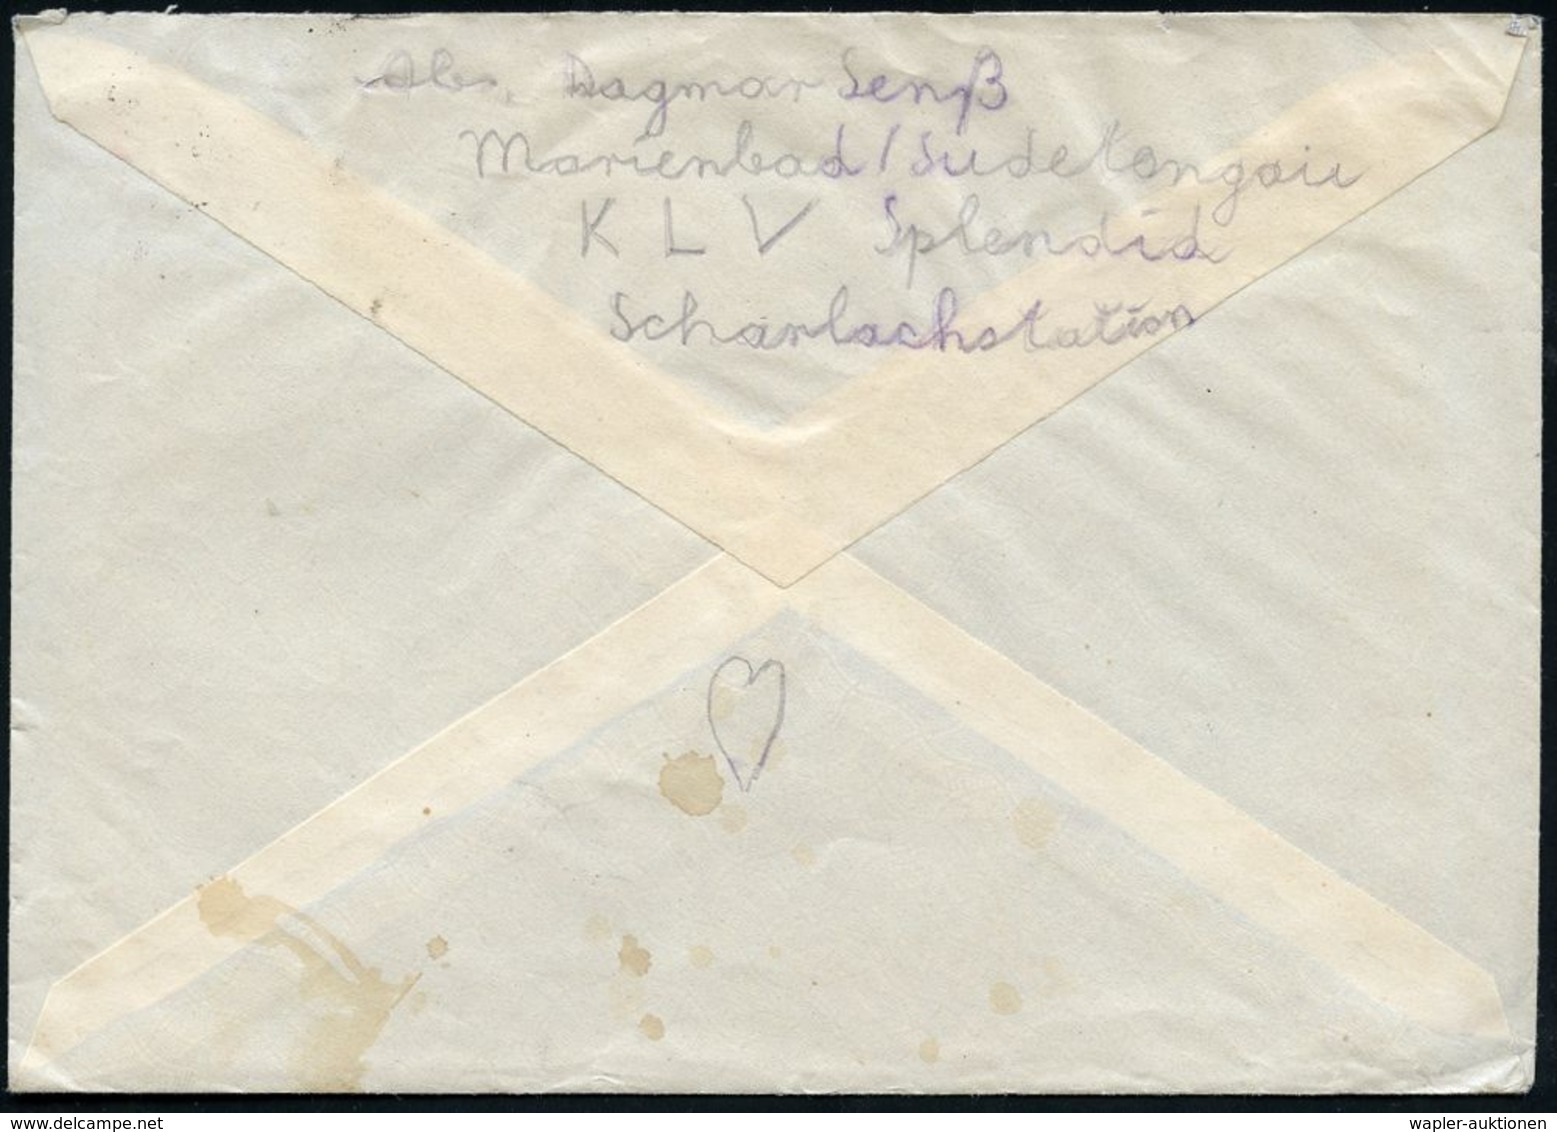 KINDERLANDVERSCHICKUNG (KLV) / KLV-LAGER : MARIENBAD 1/ F 1941 (22.11.) 2K-Steg + Viol. 3L: K L V - Lager/Hotel Splendid - Guerre Mondiale (Seconde)